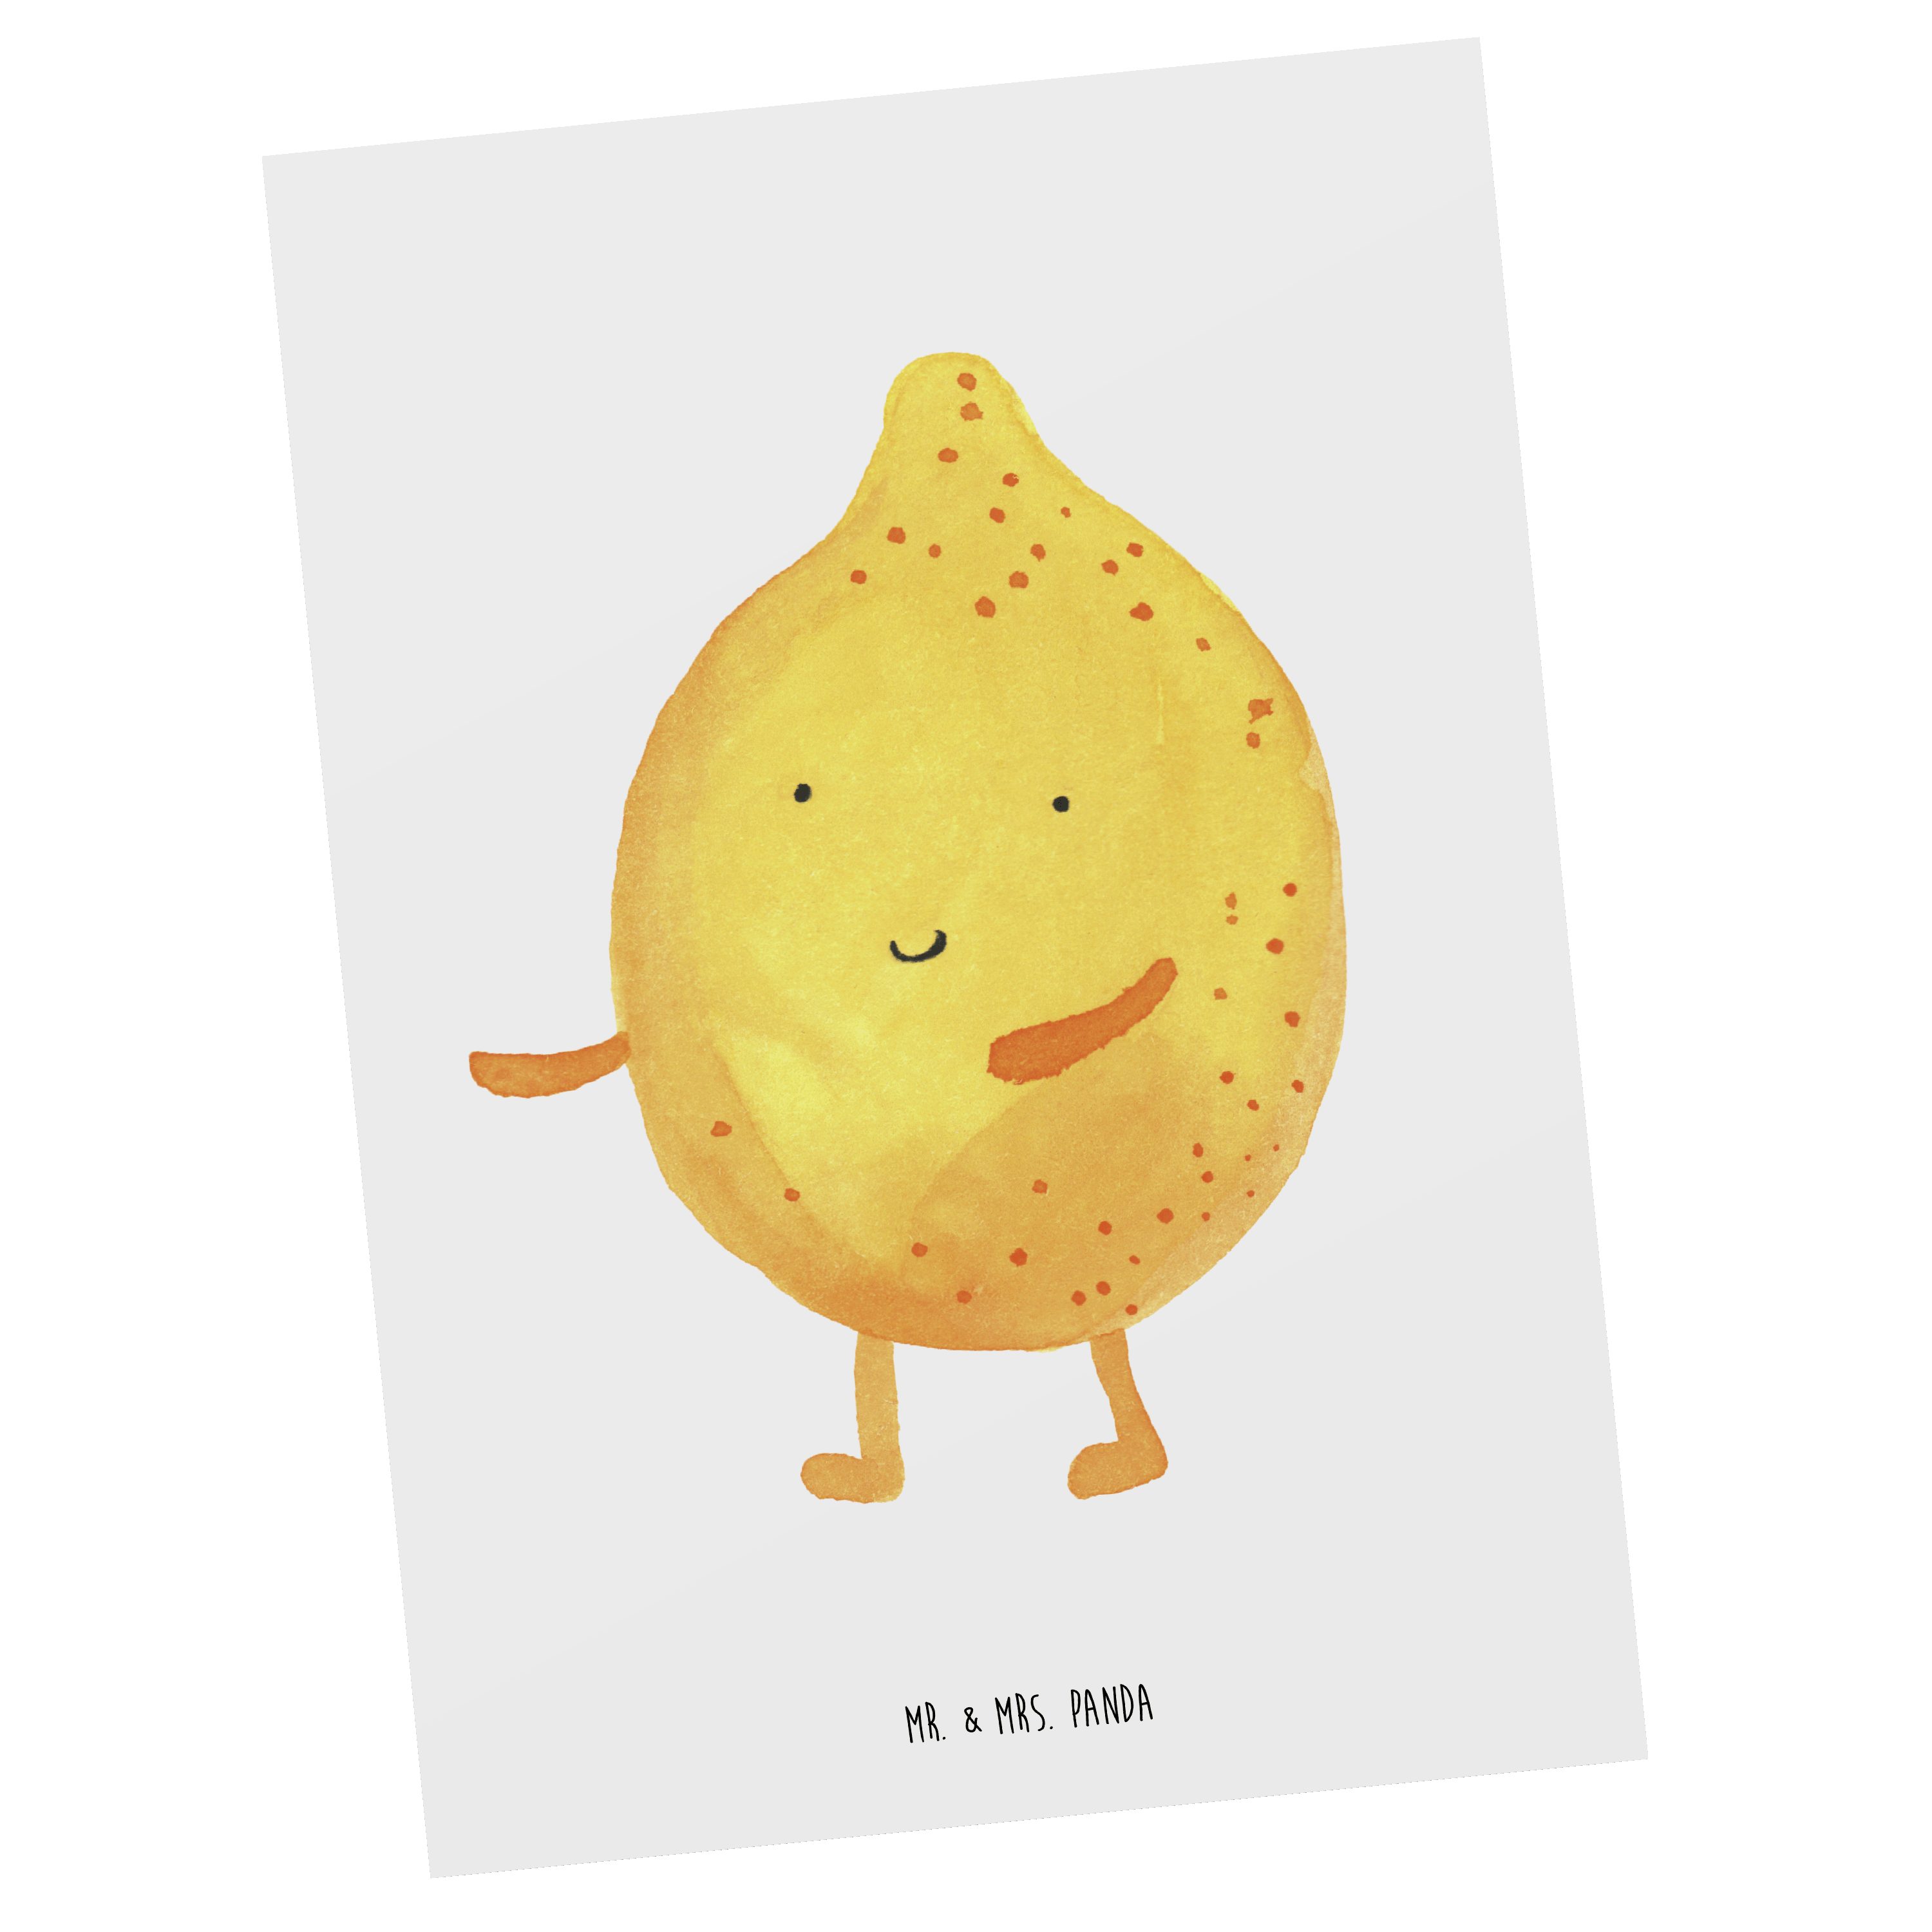 Mr. & Mrs. Panda Postkarte BestFriends-Lemon - Weiß - Geschenk, Gute Laune, Grußkarte, Einladung